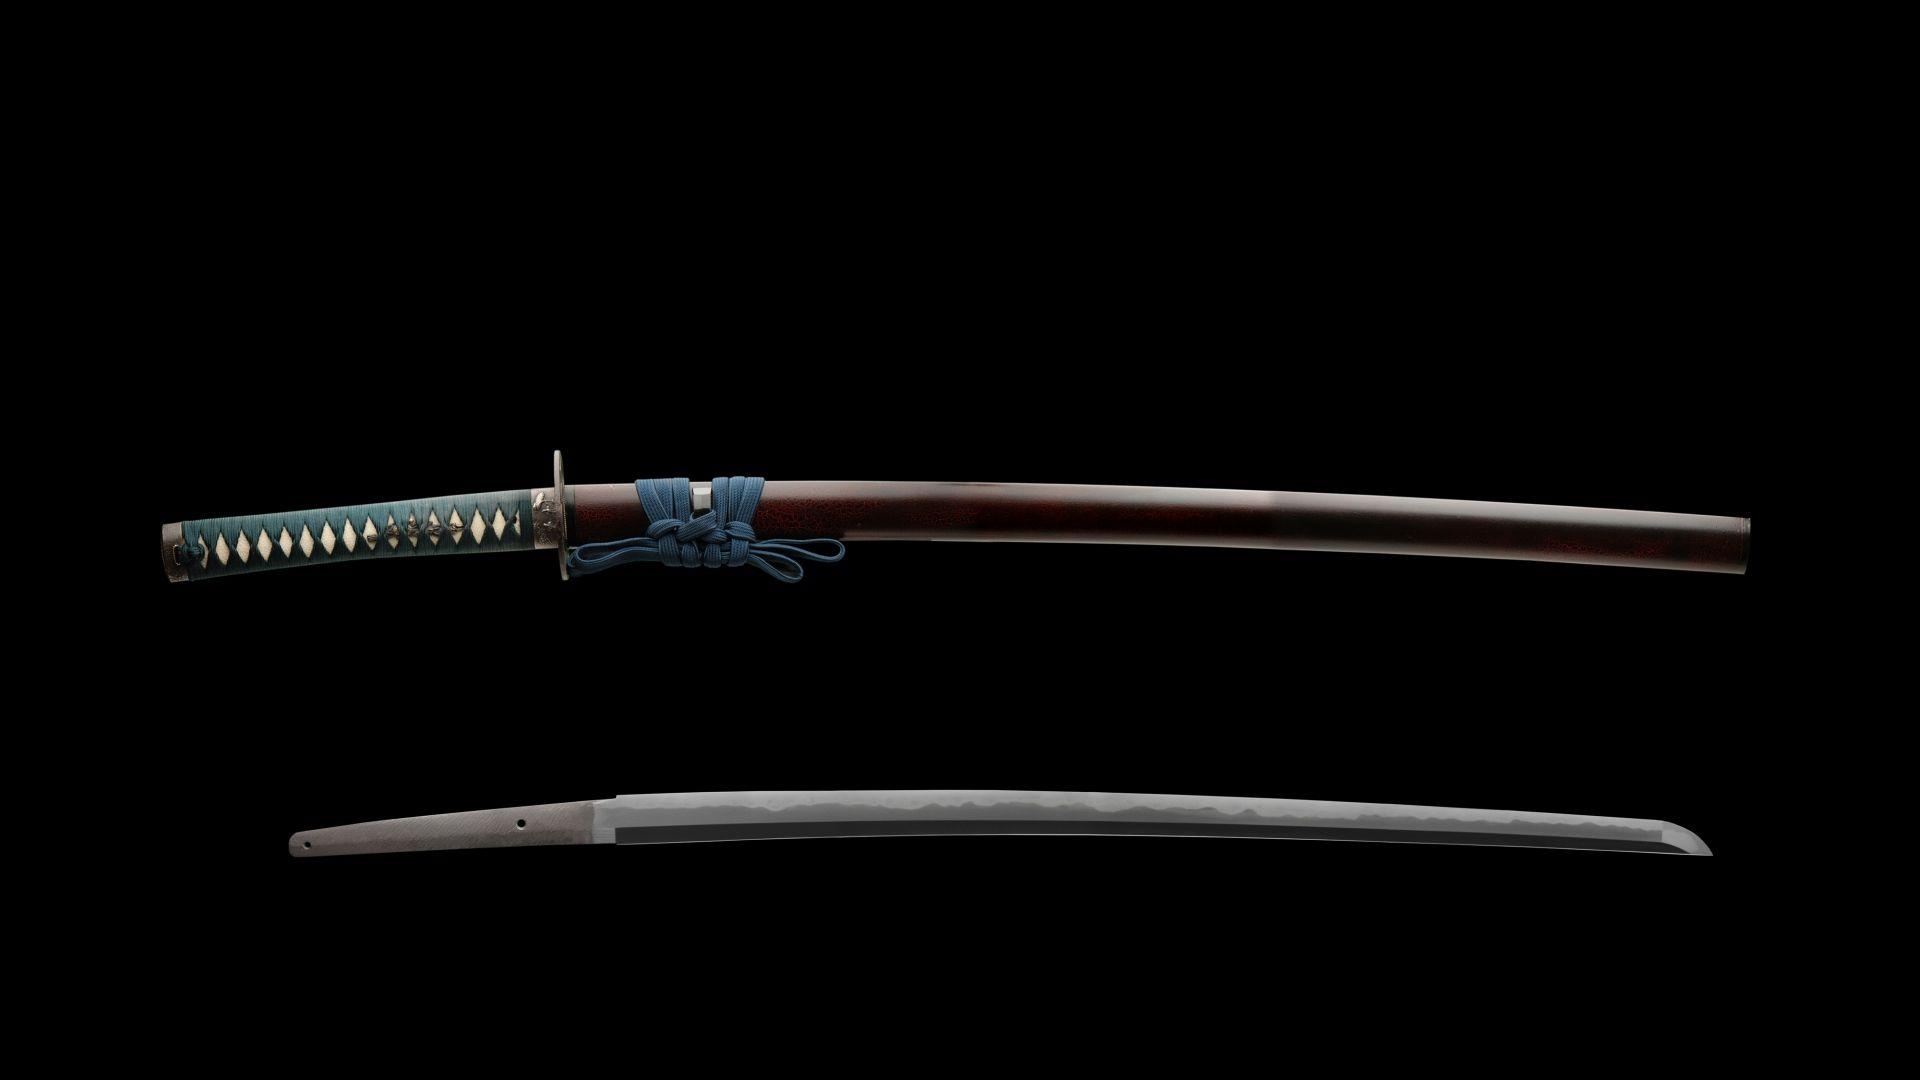 Download Wallpaper 1920x1080 katana, sword, samurai, japan Full HD